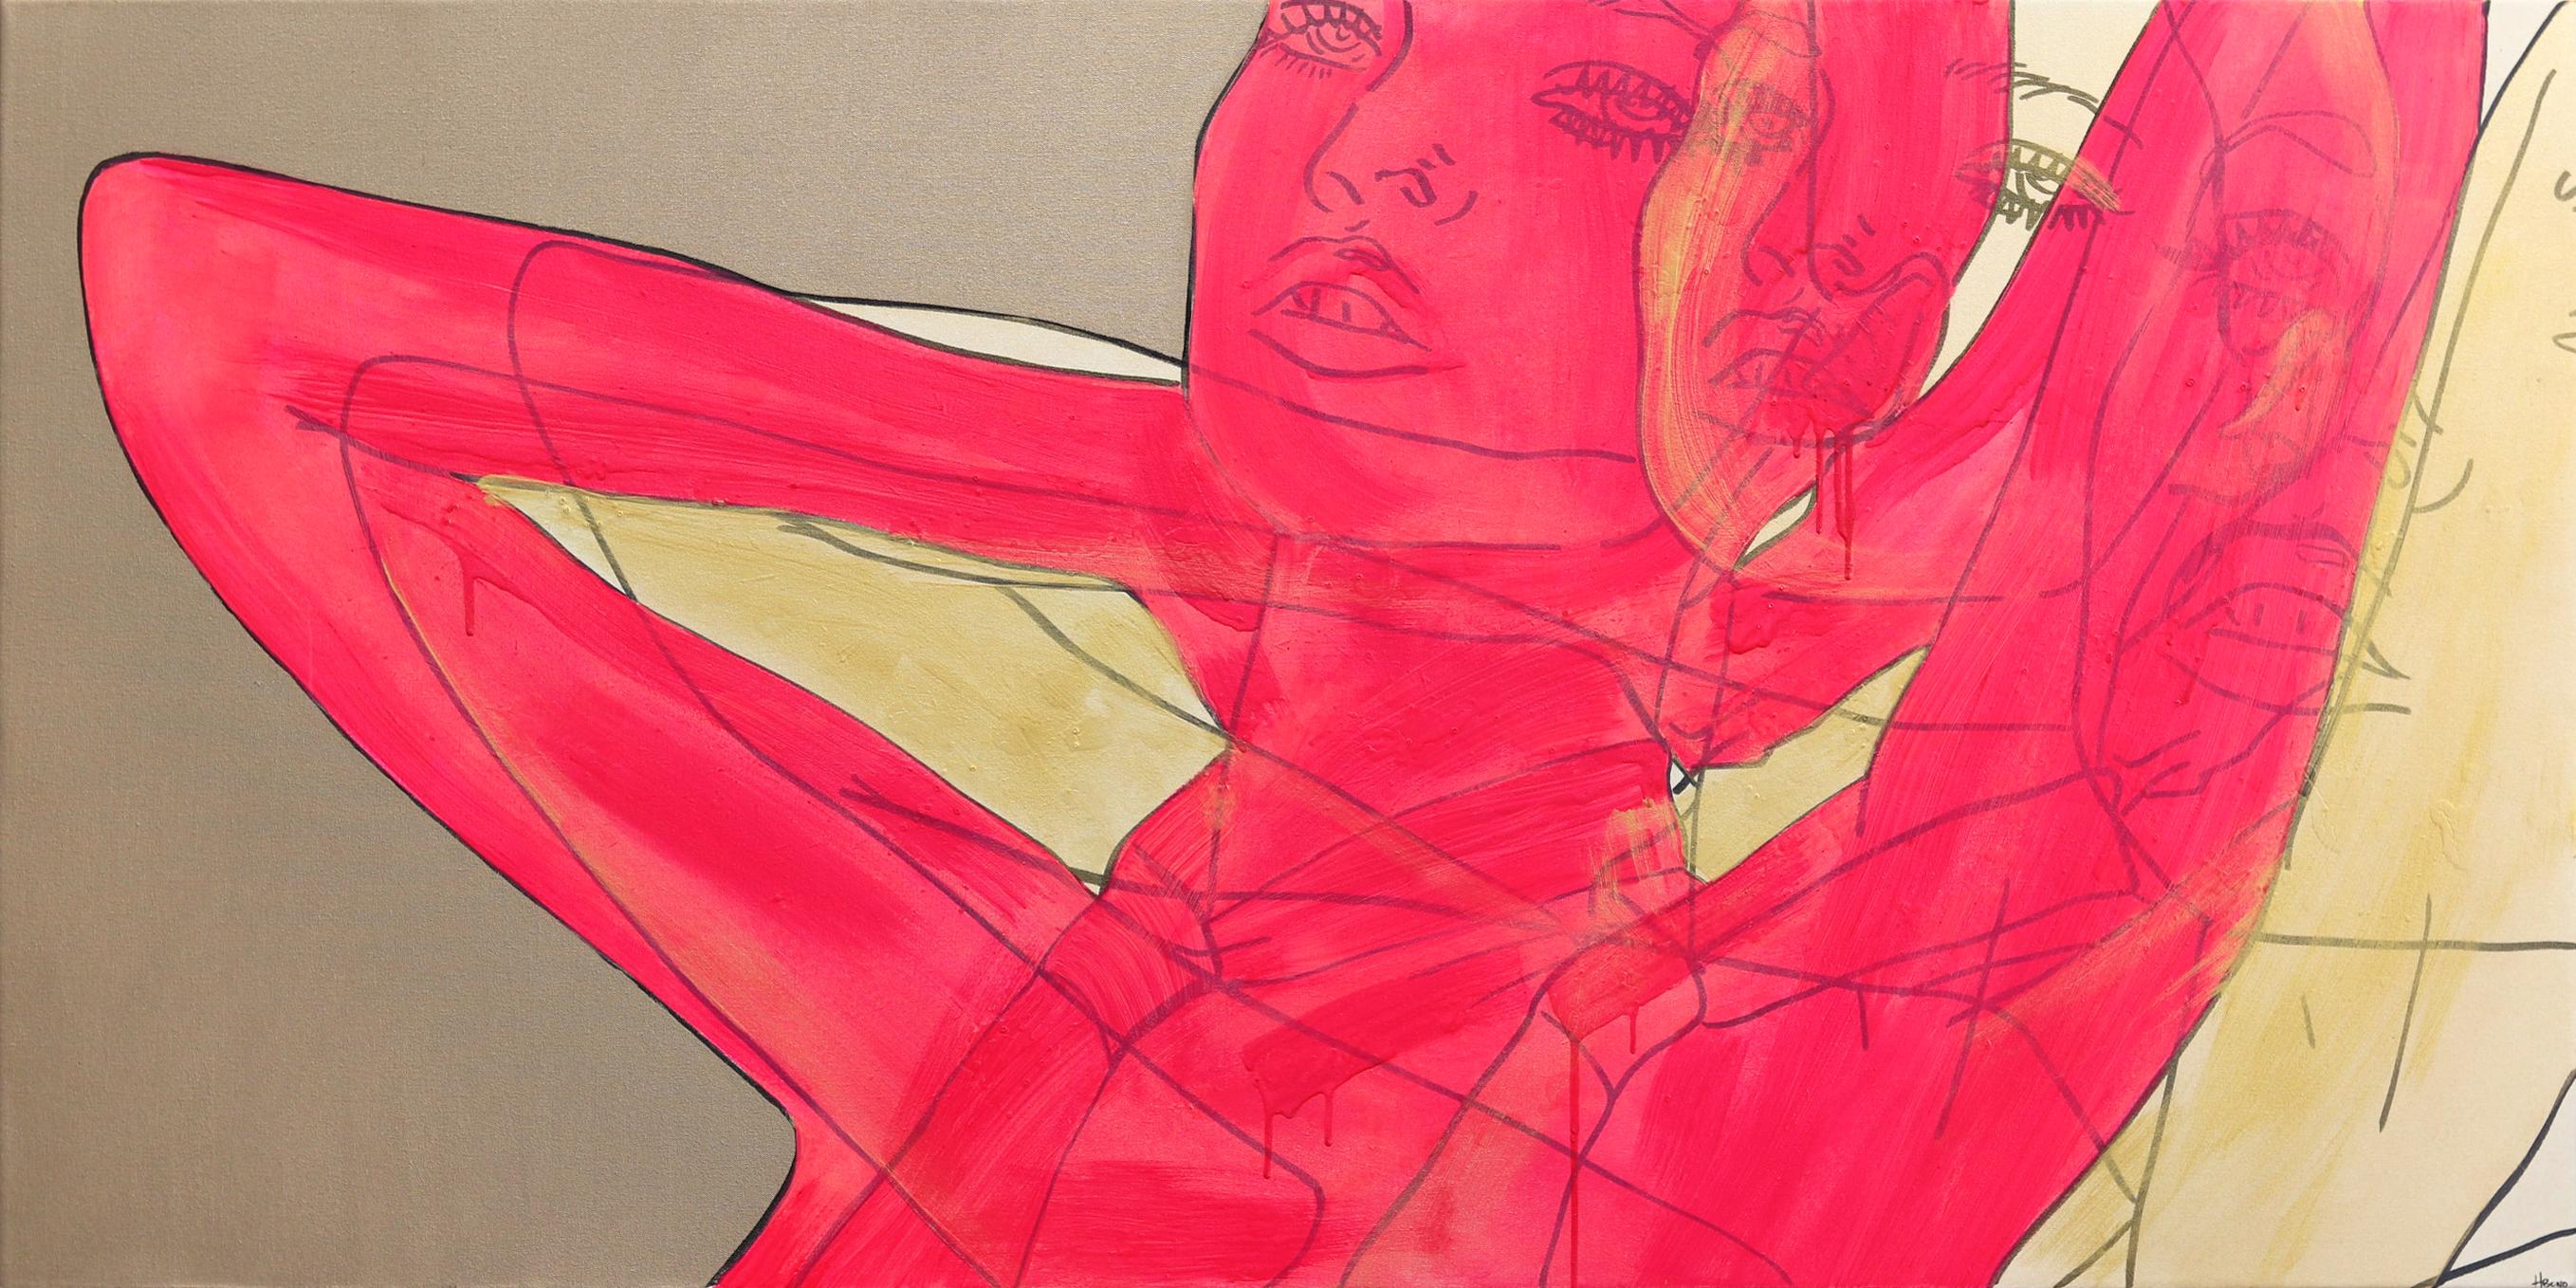 Untitled (Pink and Gold Tie) - Portrait figuratif de femme Pop Art